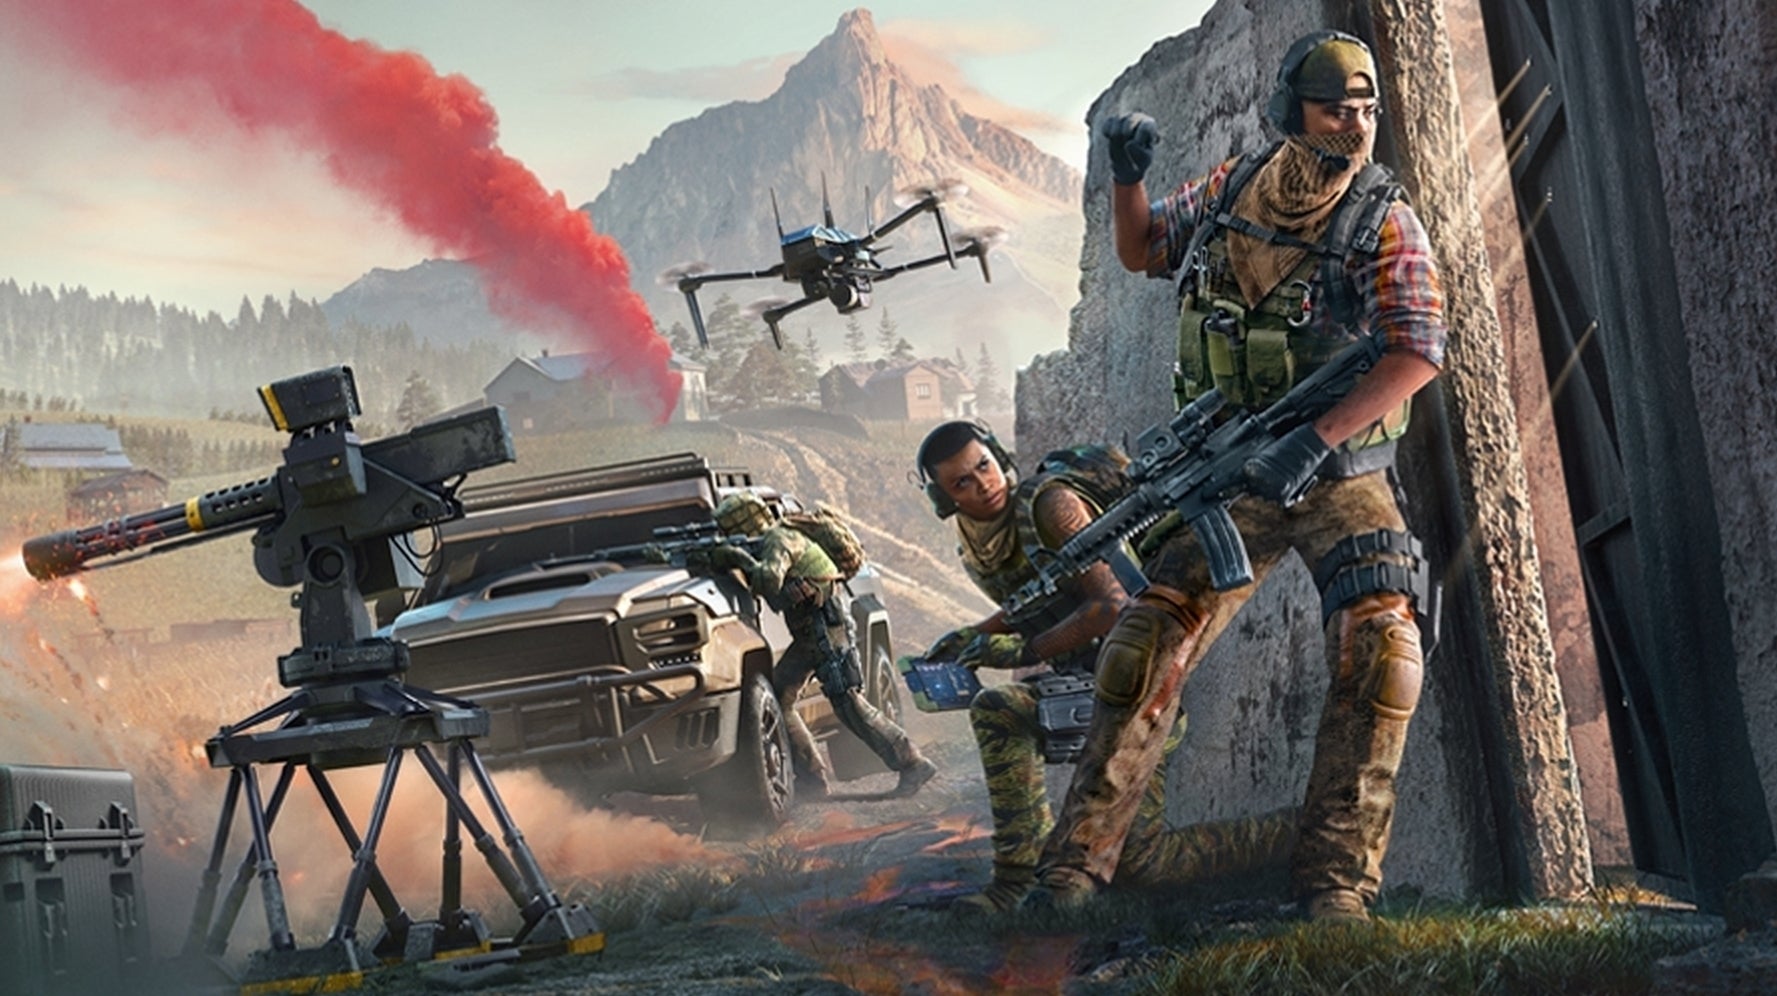 Bilder zu Ghost Recon Frontline befreit sich als Gratis-Battle-Royale von der Ubisoft-Formel